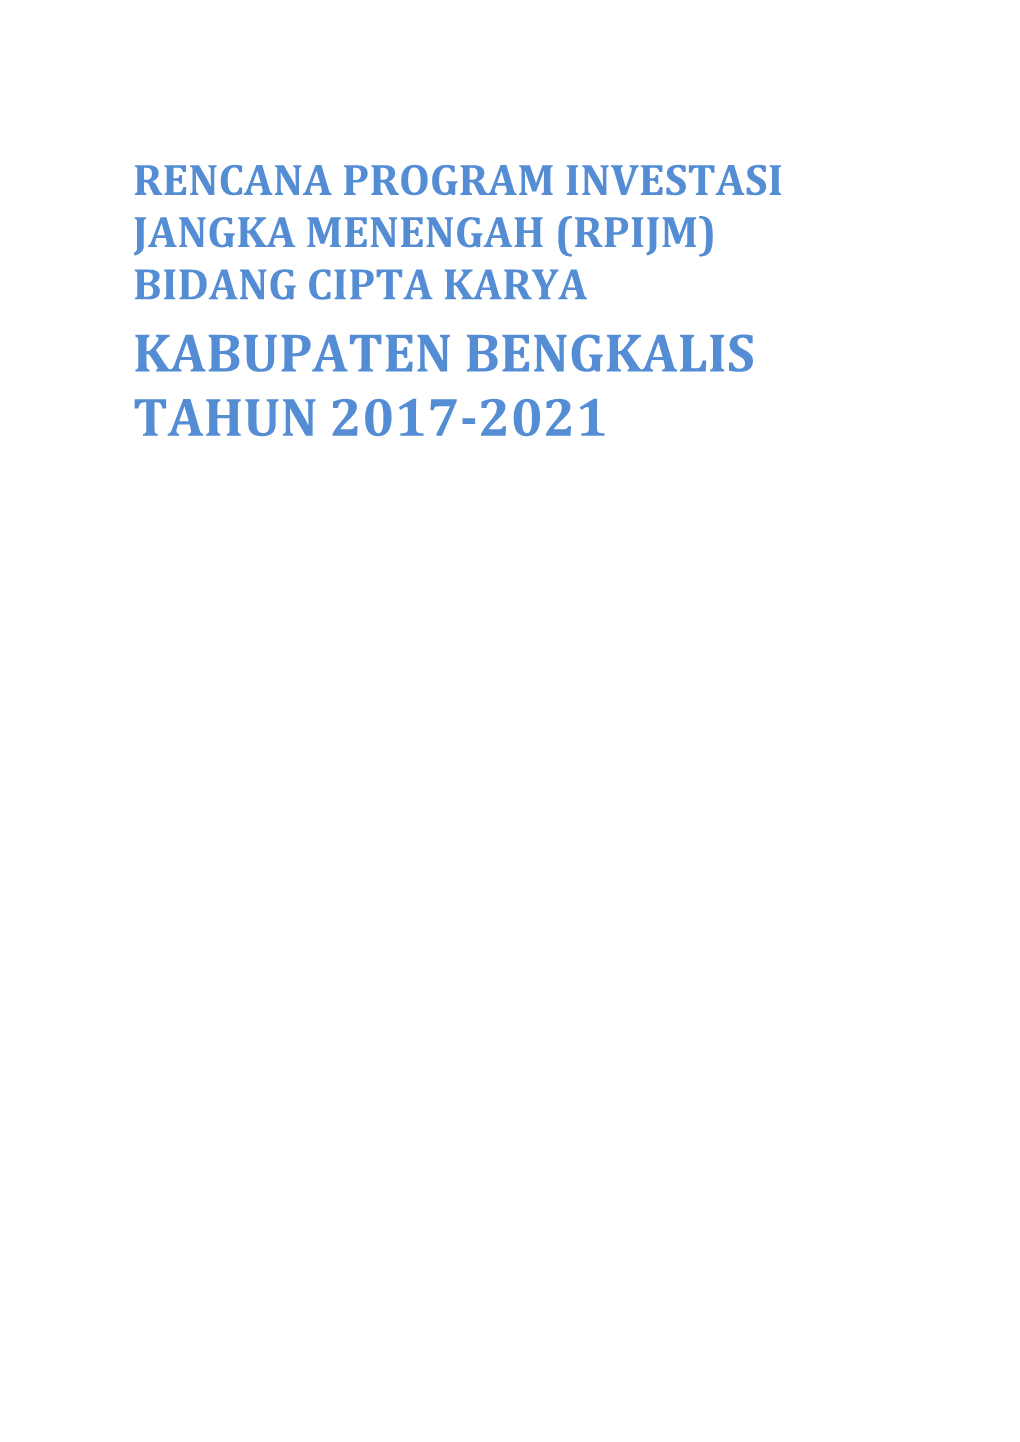 Kabupaten Bengkalis Tahun 2017-2021